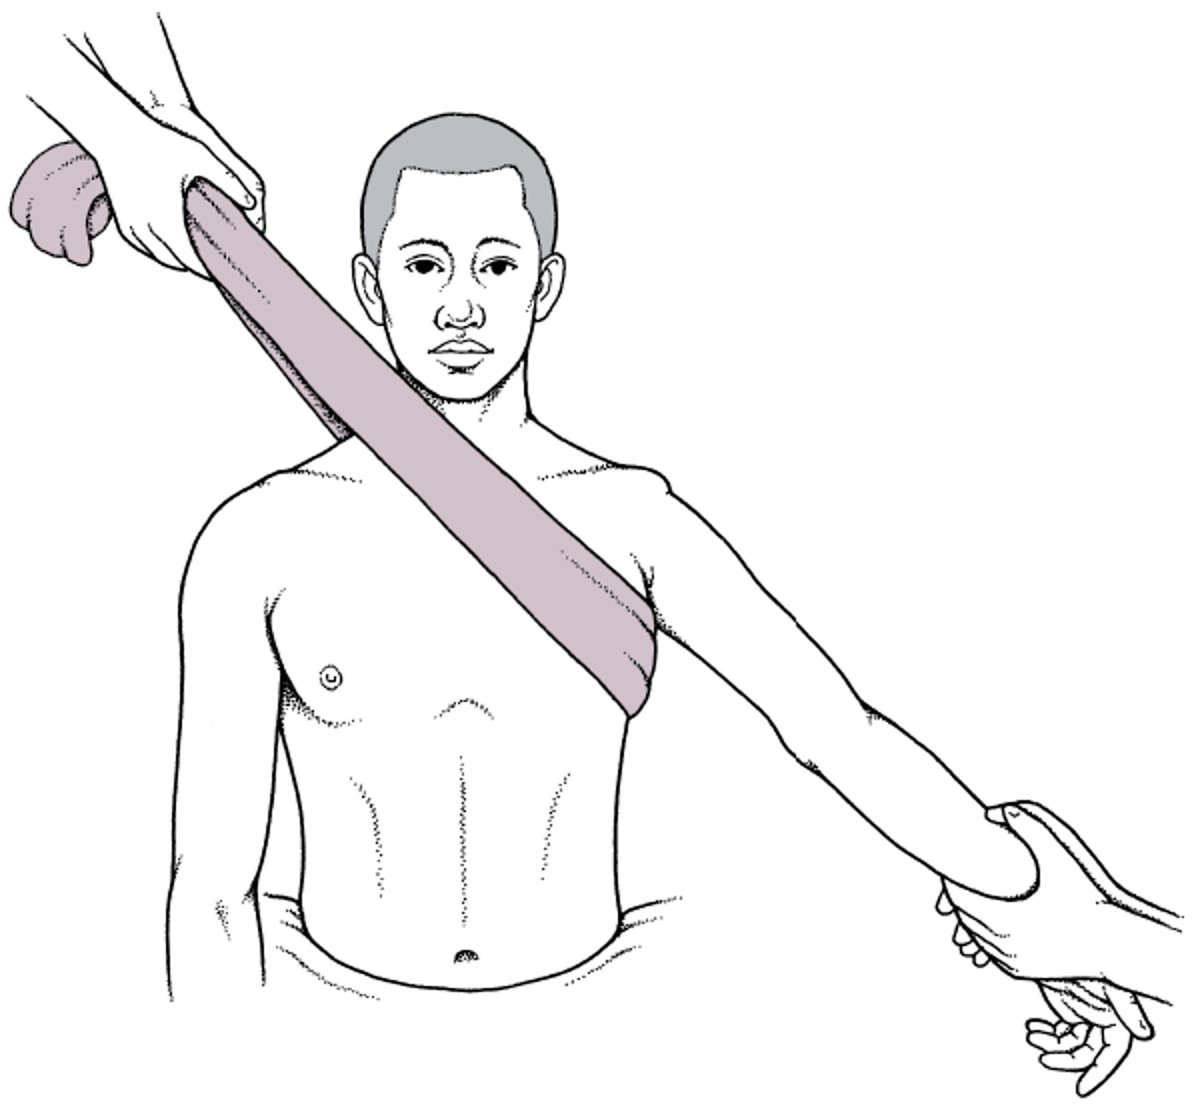 Tecnica di trazione-controtrazione per ridurre le lussazioni anteriori della spalla